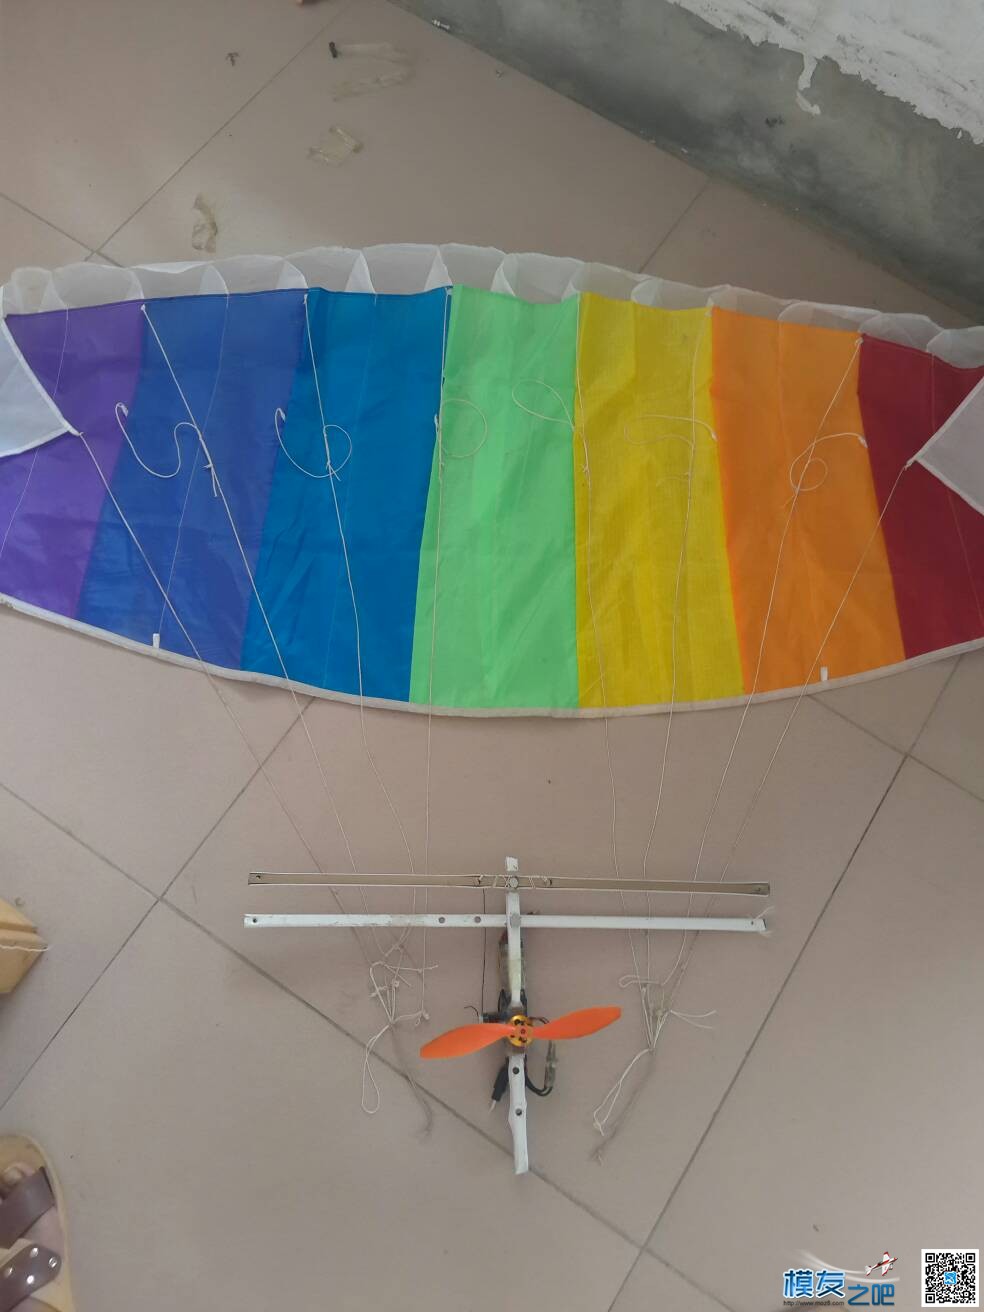 滑翔伞 电池,滑翔伞 作者:lijinzhe 5636 